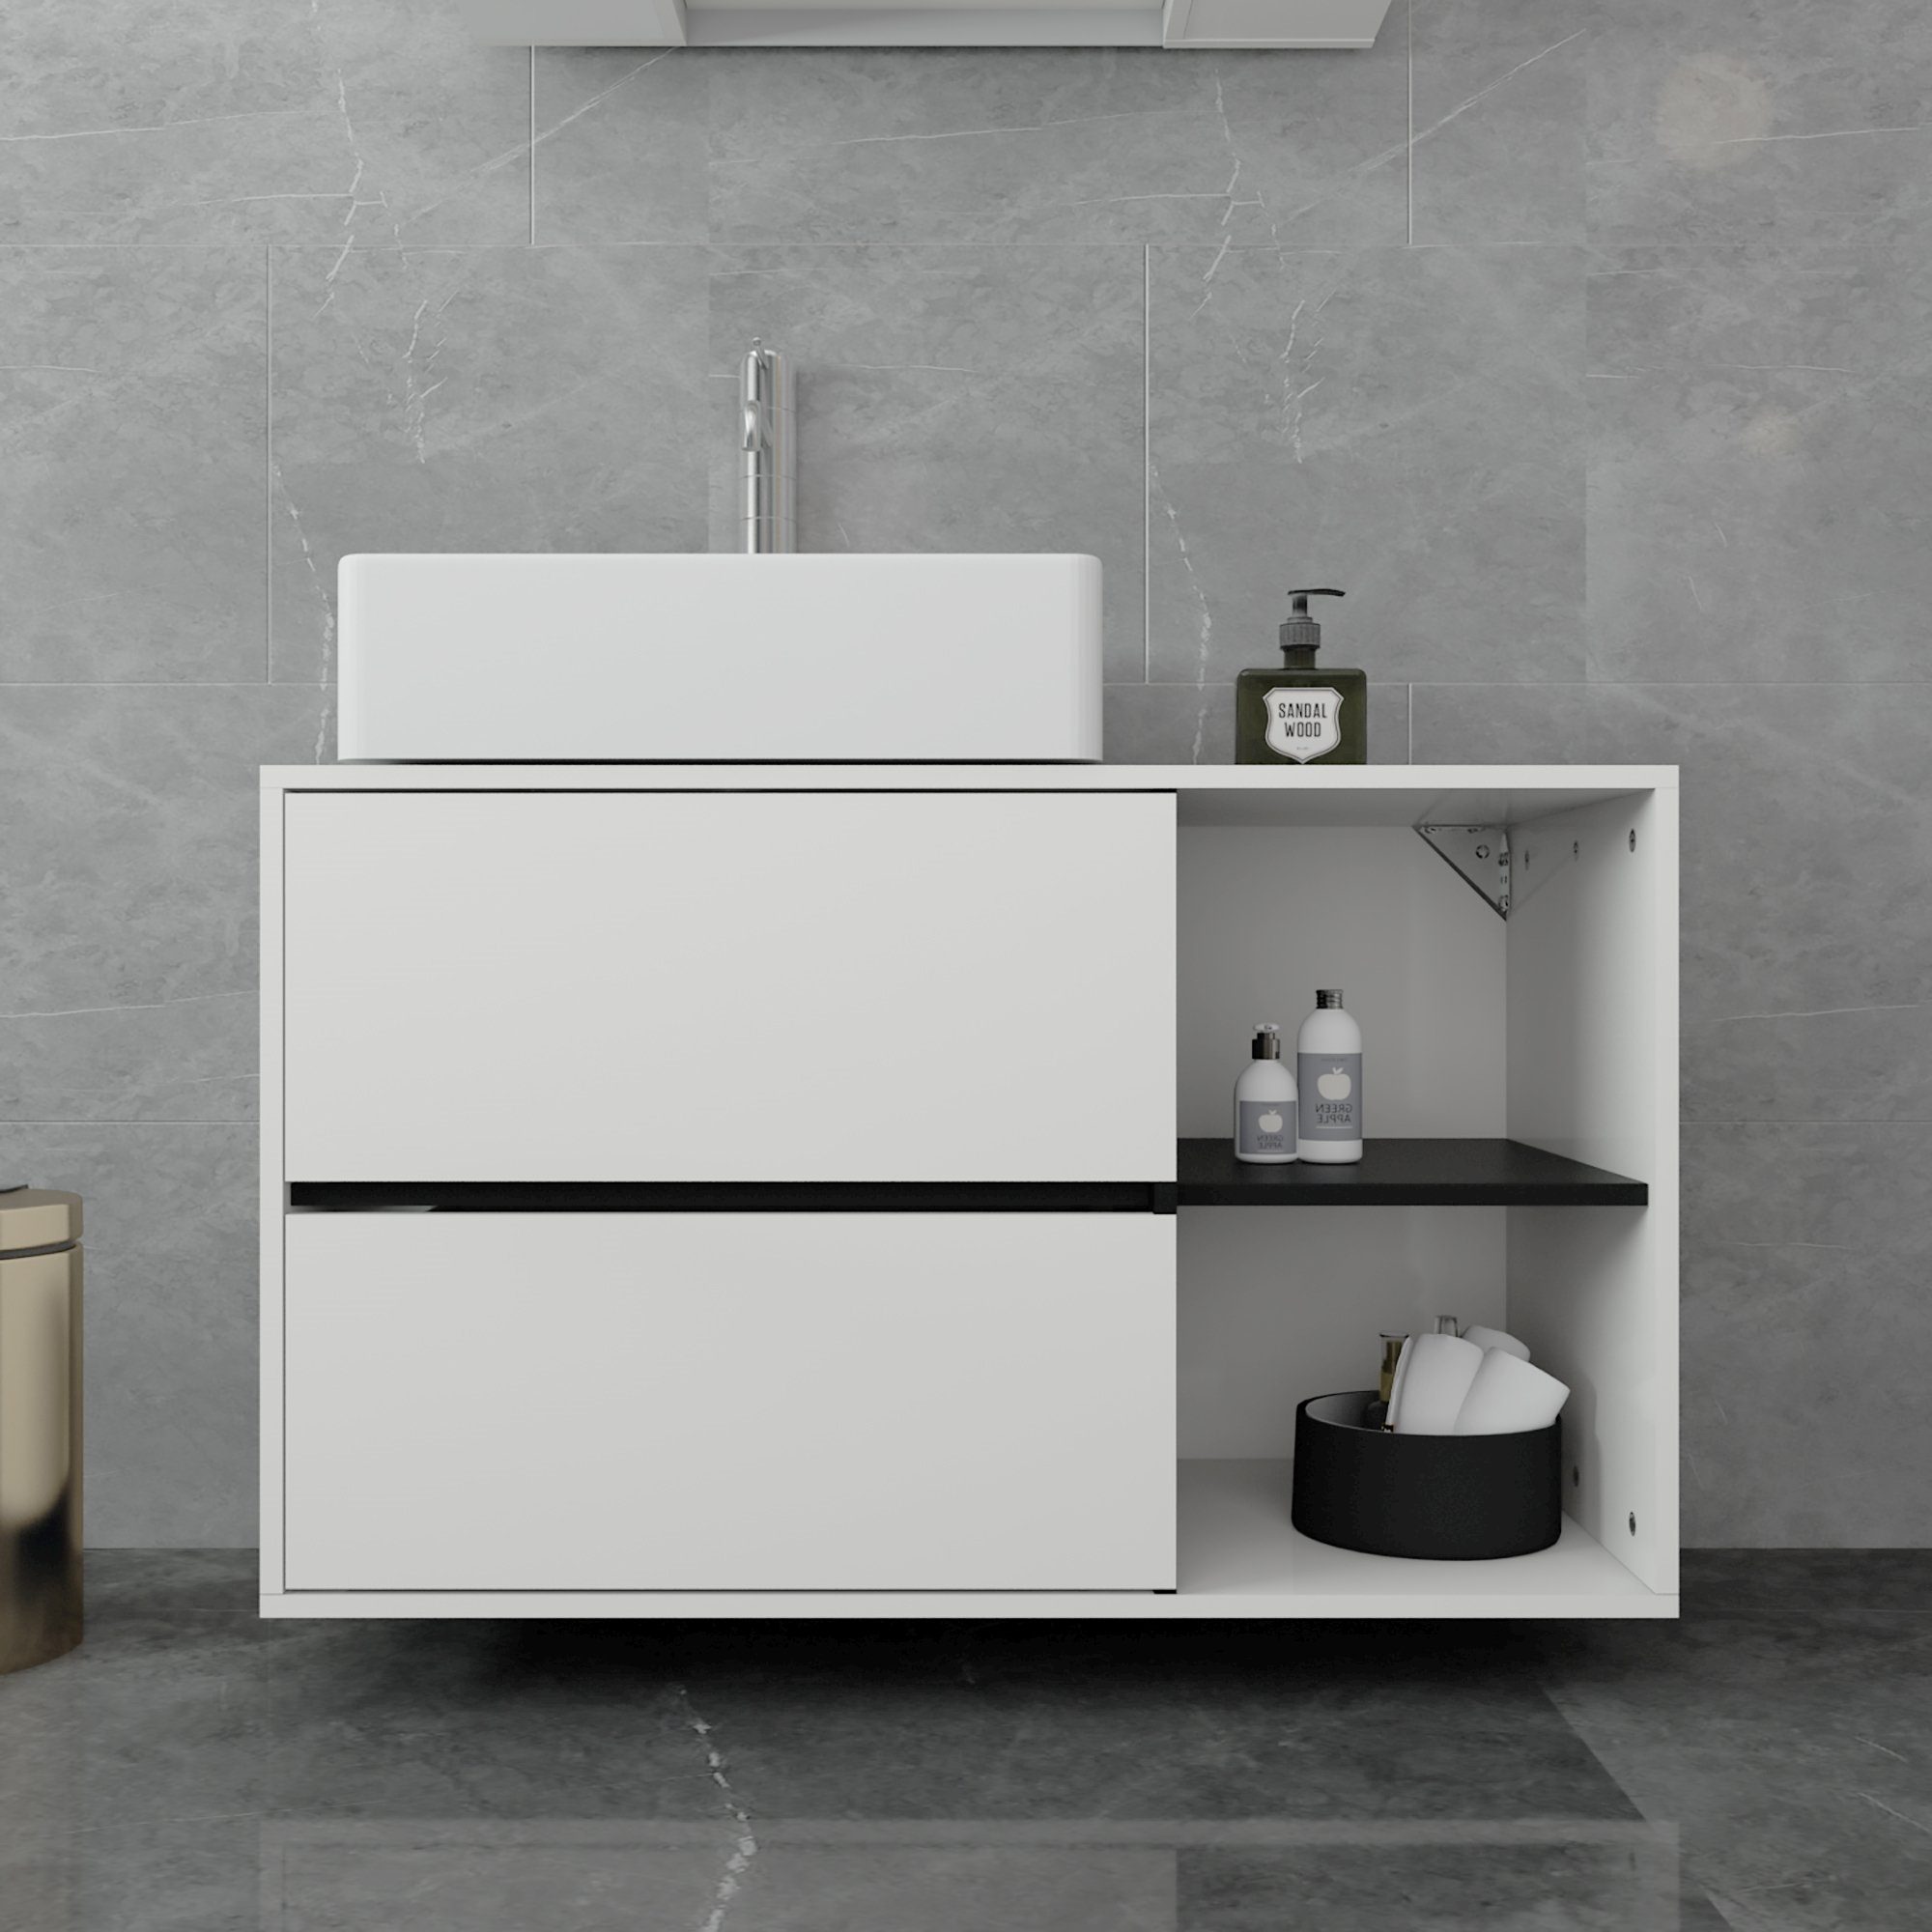 ML-DESIGN Badmöbel-Set weiß/schwarz Waschbeckenunterschrank 100x60x45,5cm